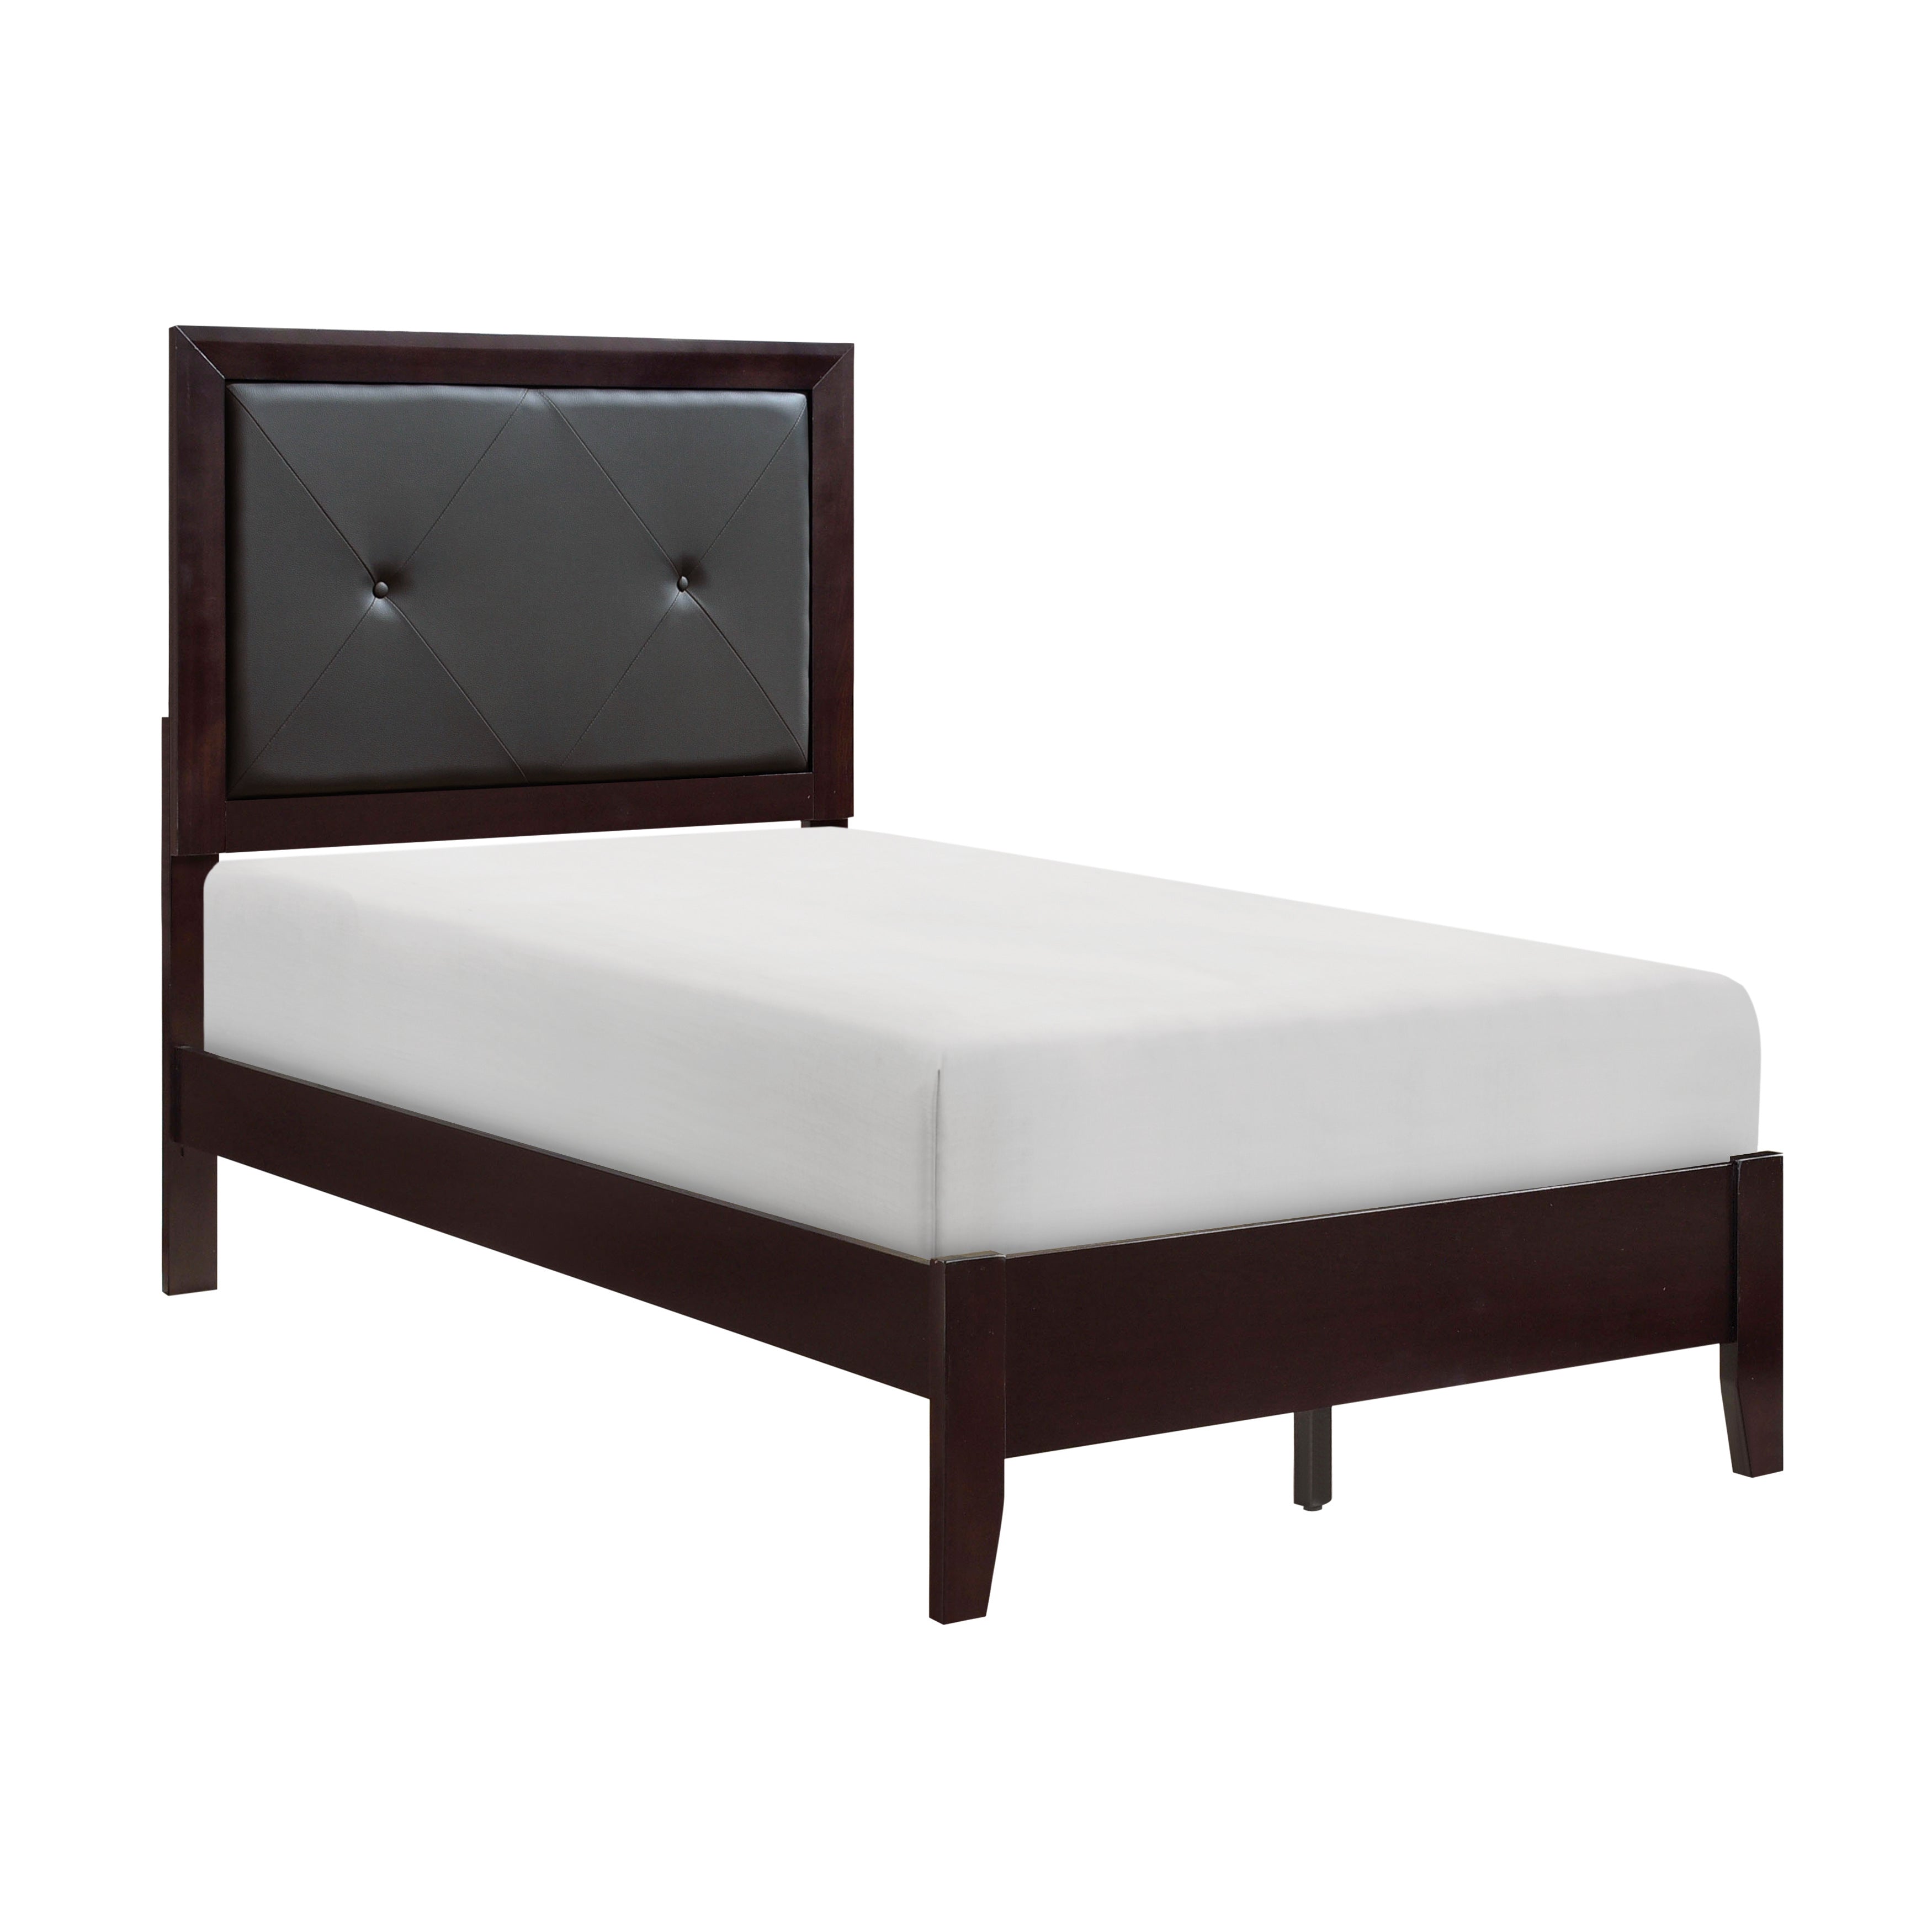 Edina Espresso Upholstered Panel Youth Bedroom Set - SET | 2145F-1 | 2145F-2 | 2145F-3 | 2145-5 | 2145-6 | 2145-4 | 2145-9 - Bien Home Furniture &amp; Electronics